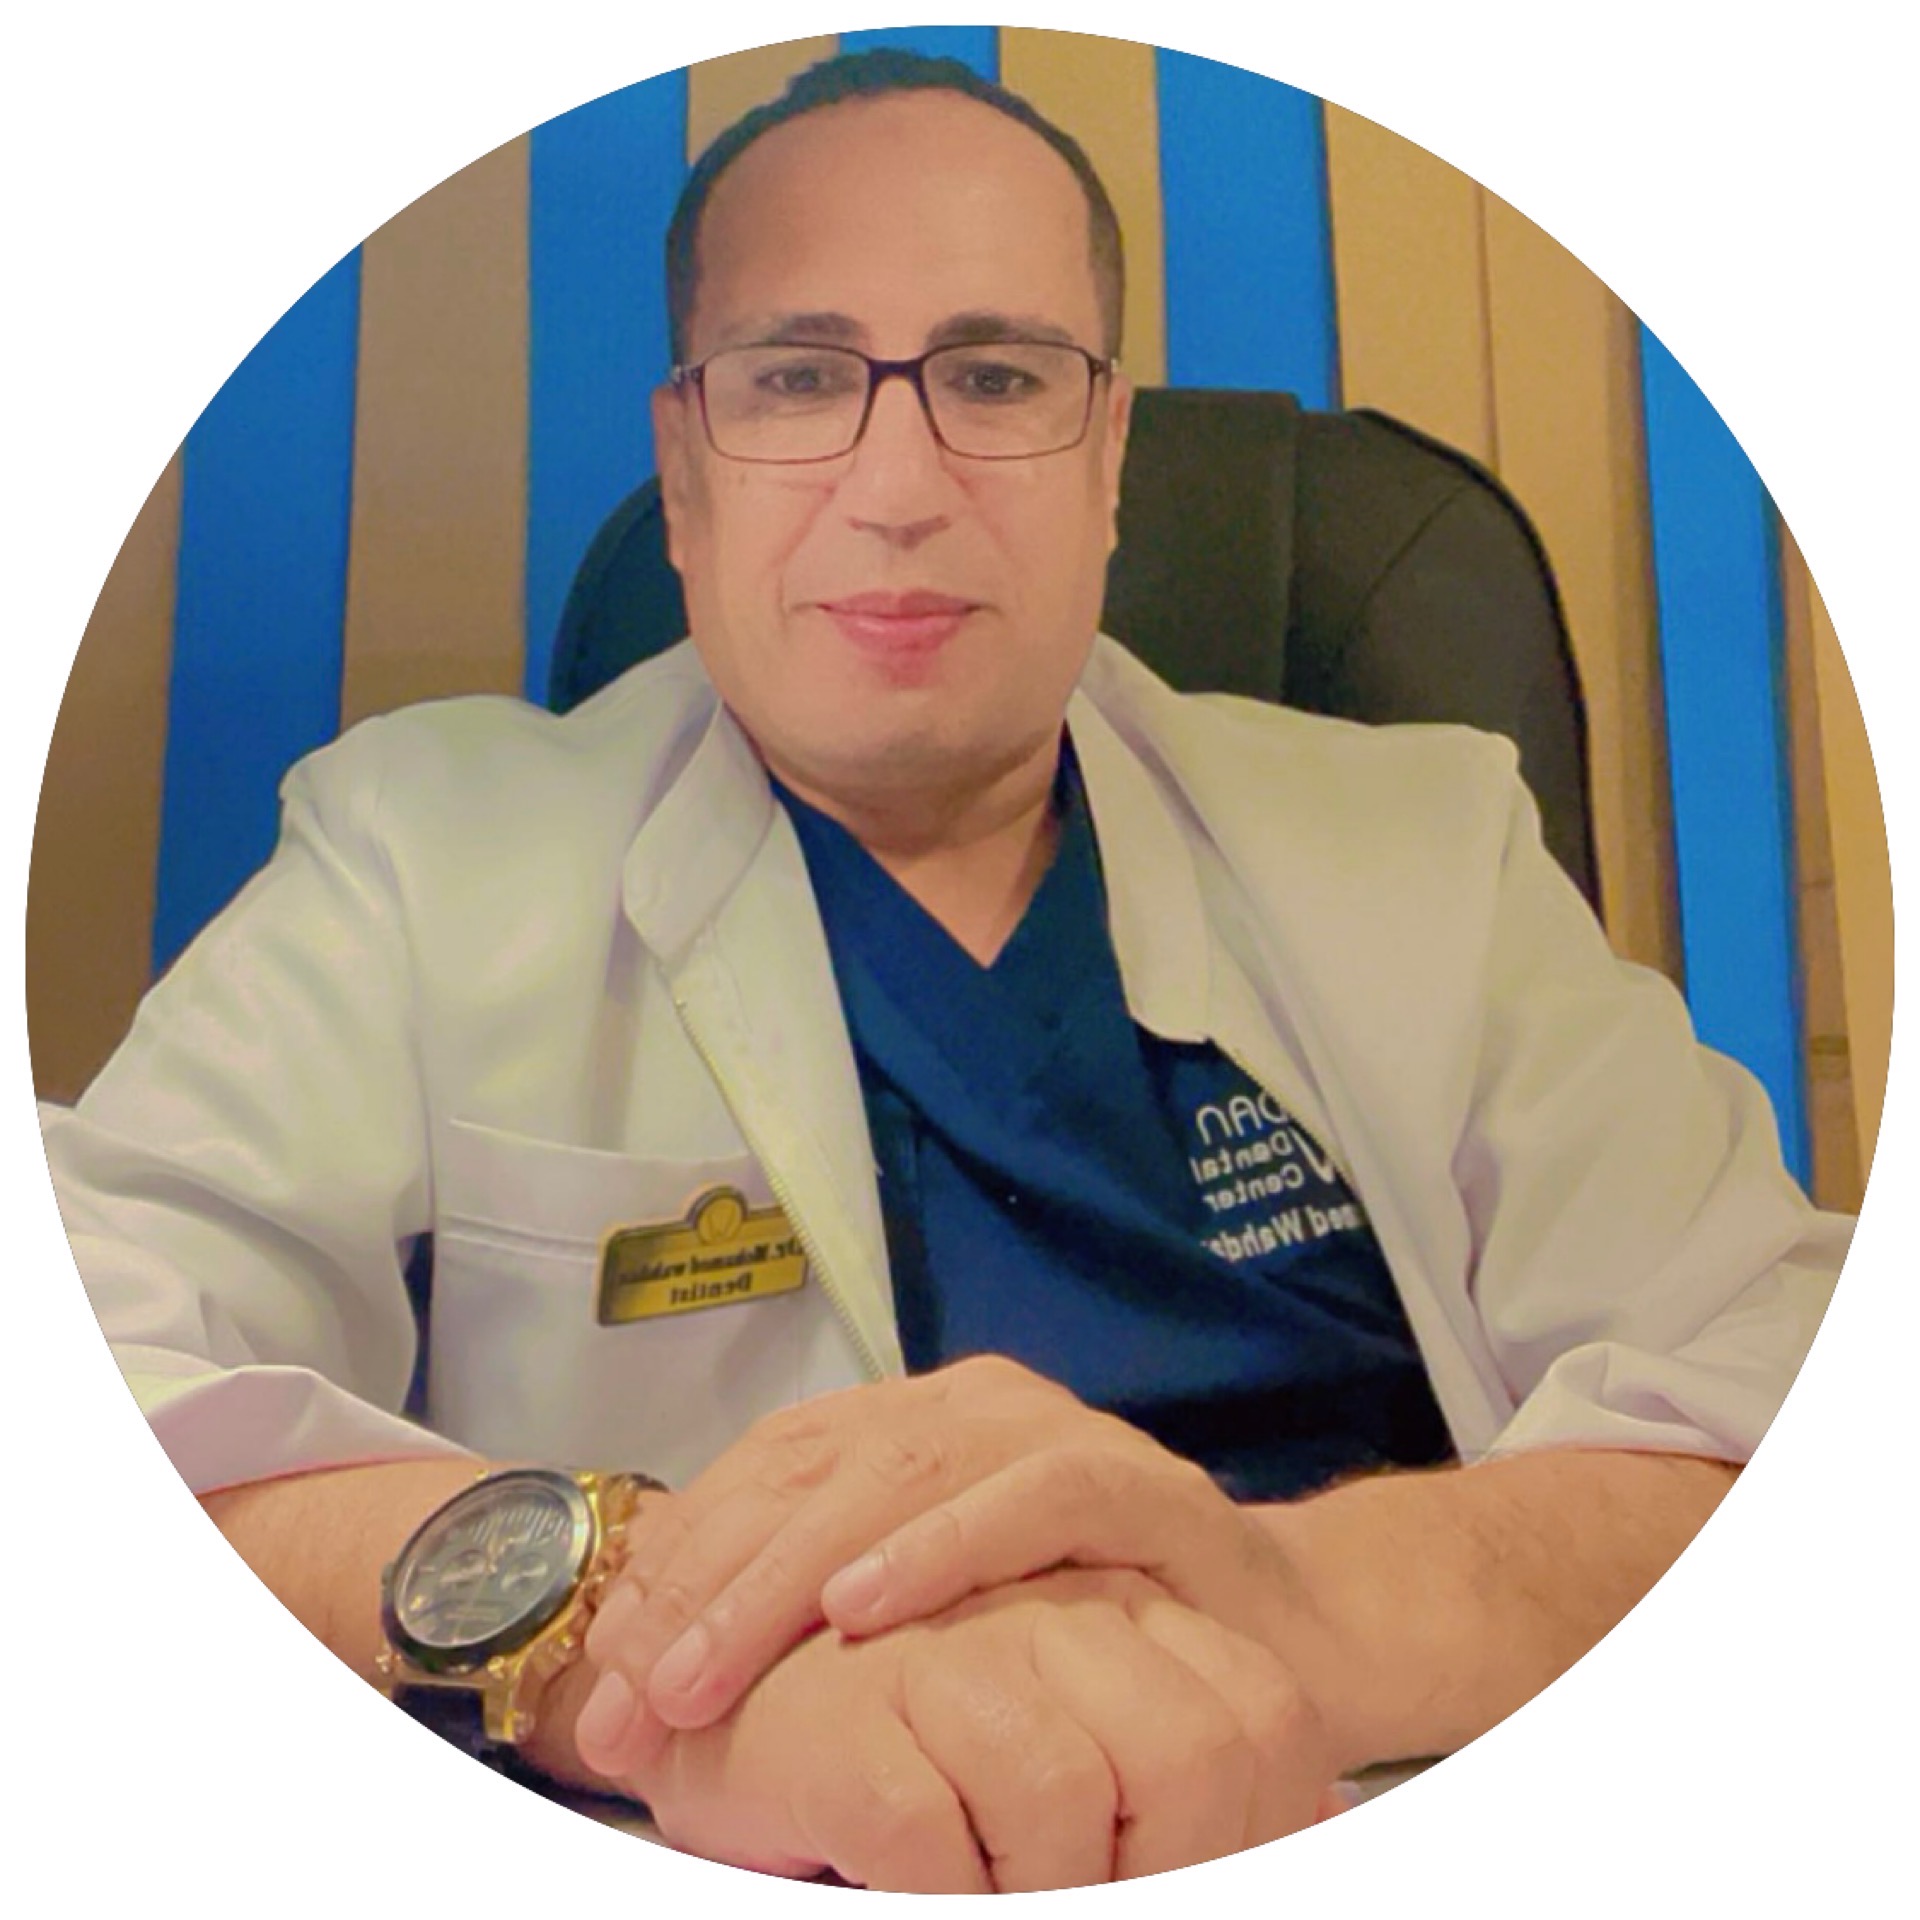 دكتور محمد وهدان